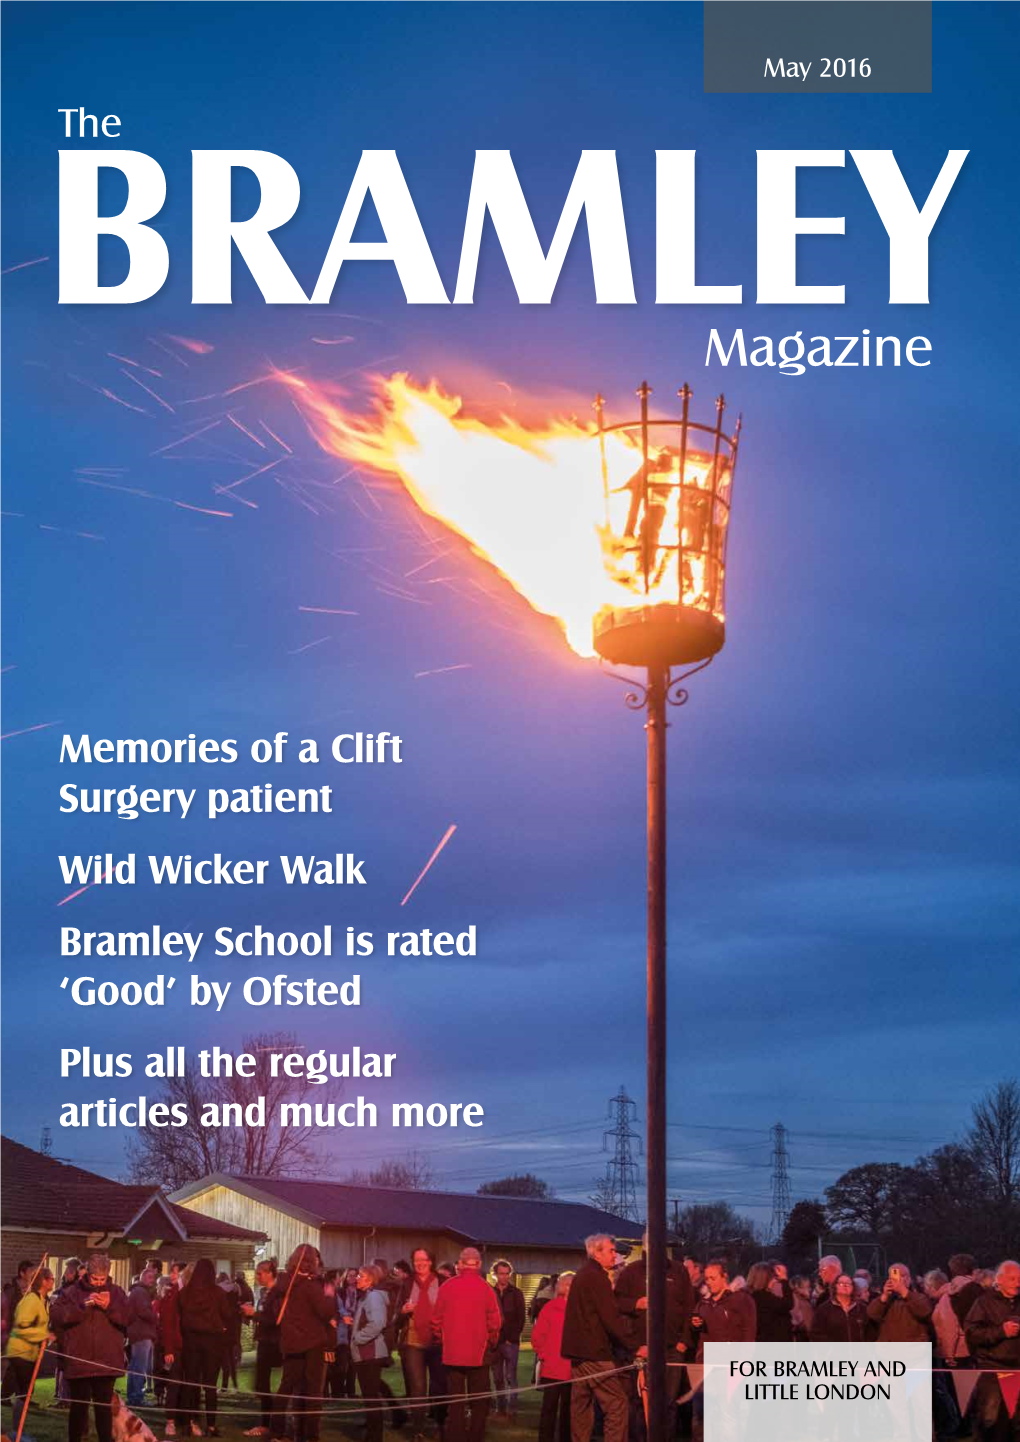 The BRAMLEY Magazine